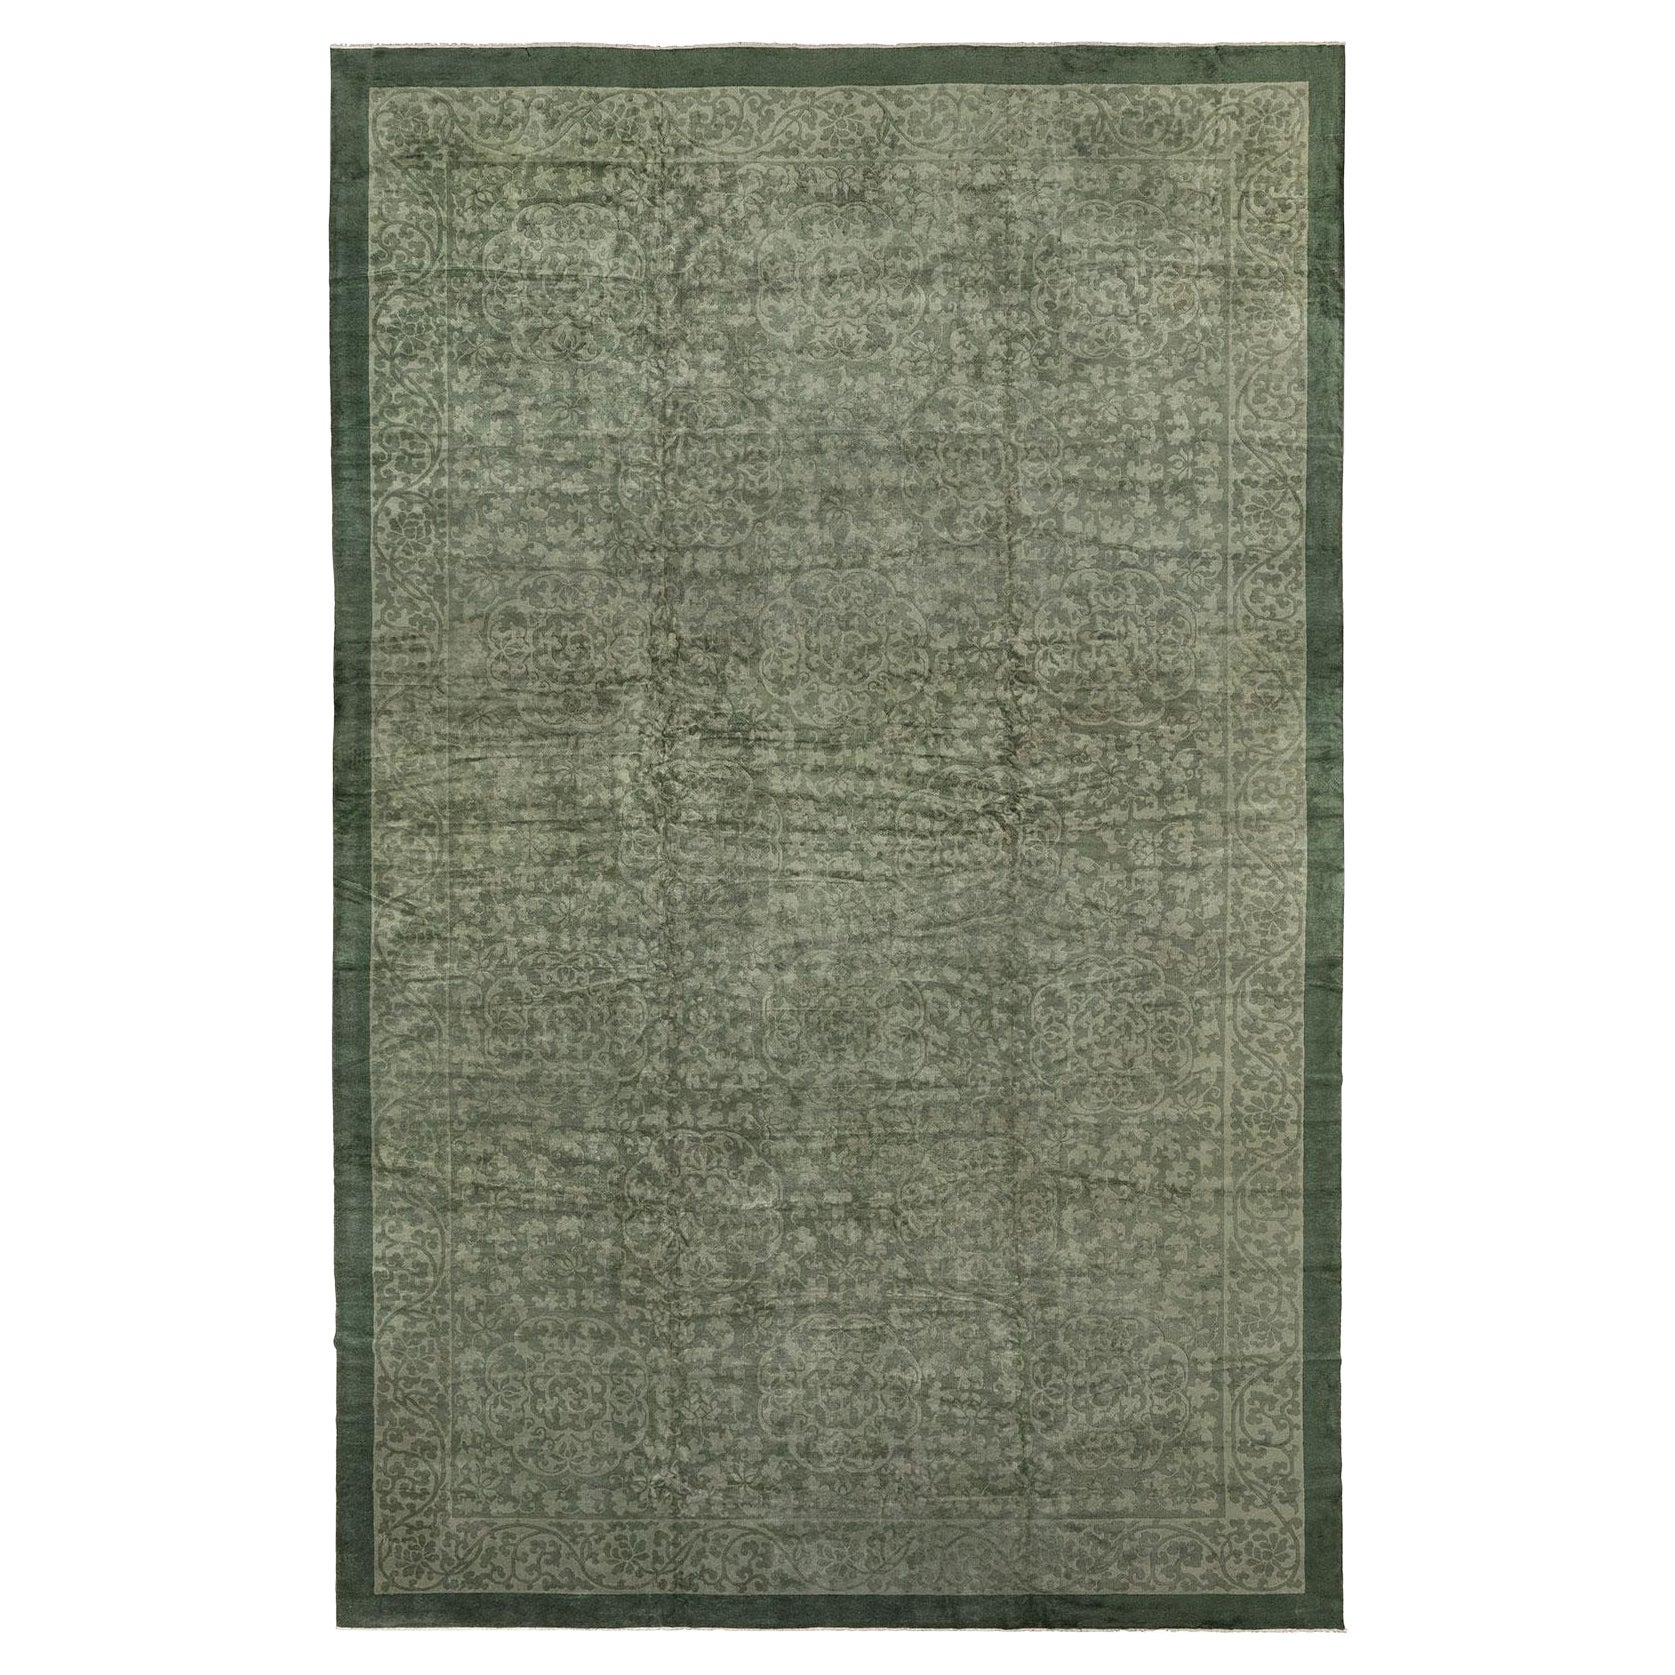 Großer antiker grüner chinesischer Teppich